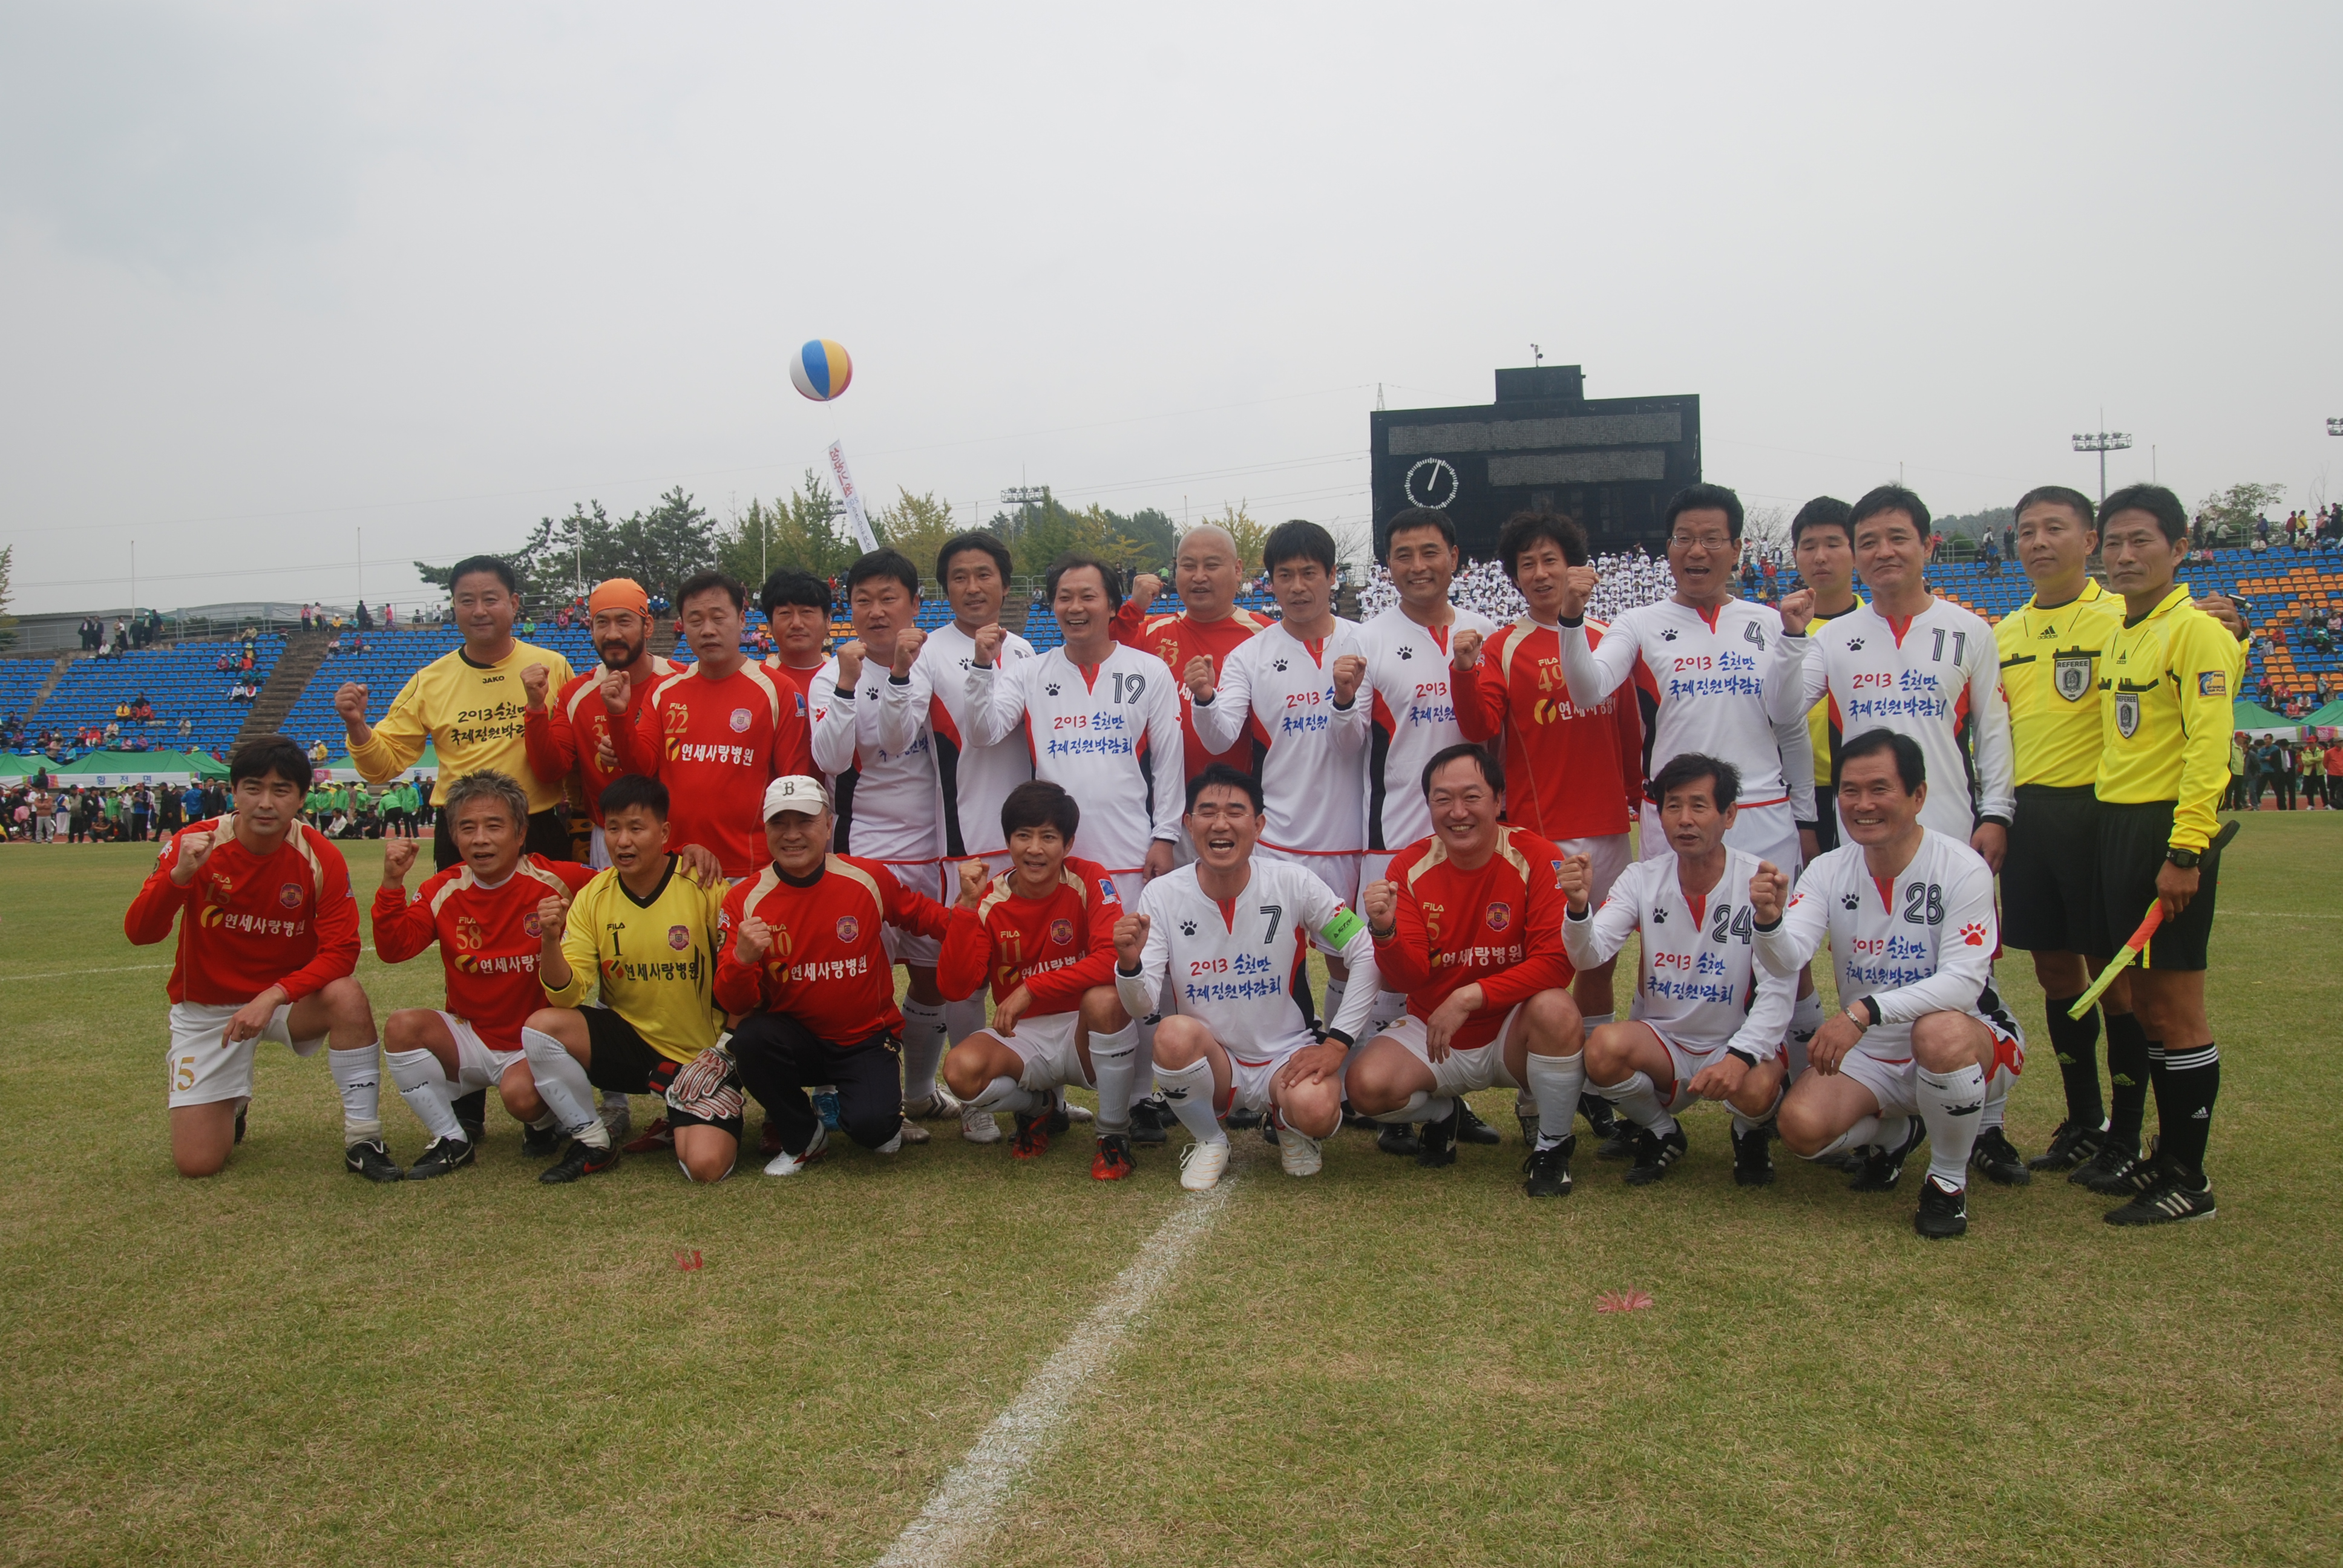 2011년 10월 15일 - 순천시민의날  기념 일레븐축구단 친선경기 게시글의 1번째 첨부파일입니다.